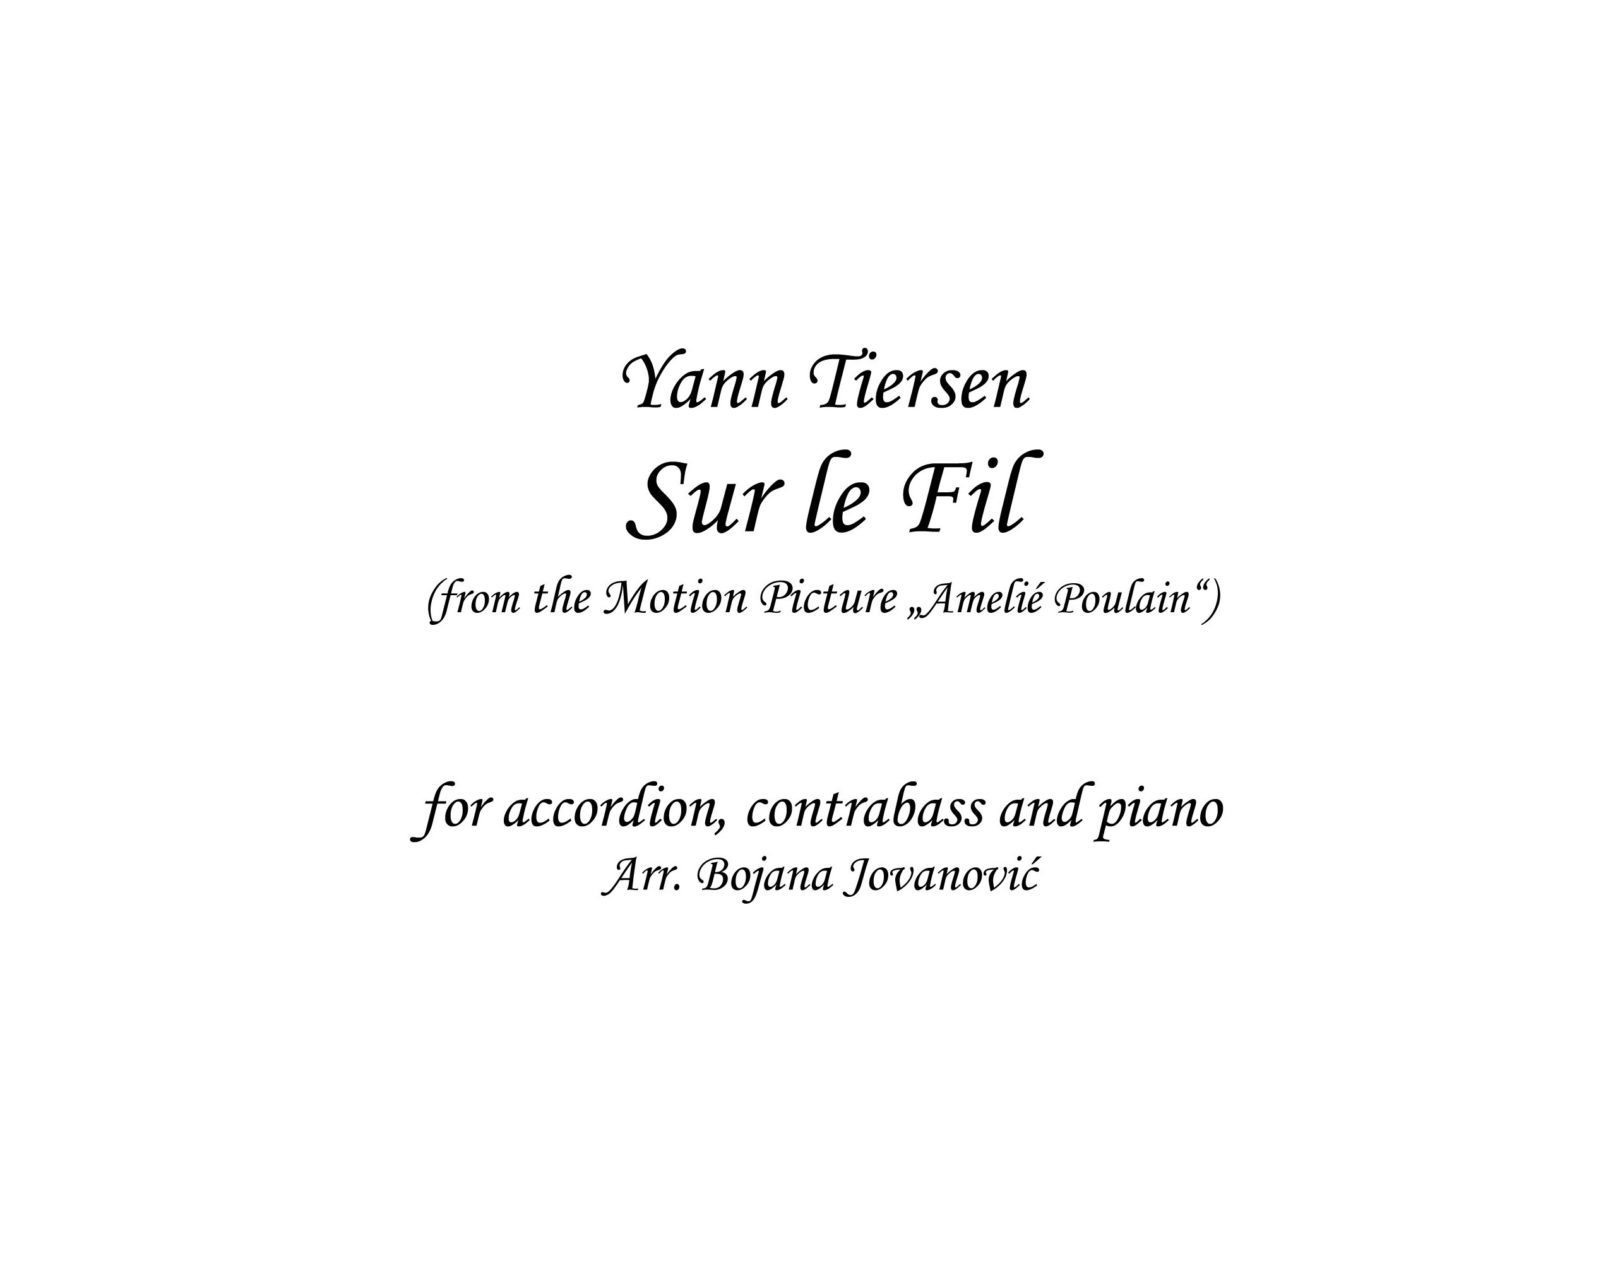 Sur Le Fil Sheet Music Yann Tiersen Trio Accordion Piano Contrabass Download yann tiersen la valse d'amelie sheet music and printable pdf music notes. sur le fil yann tiersen